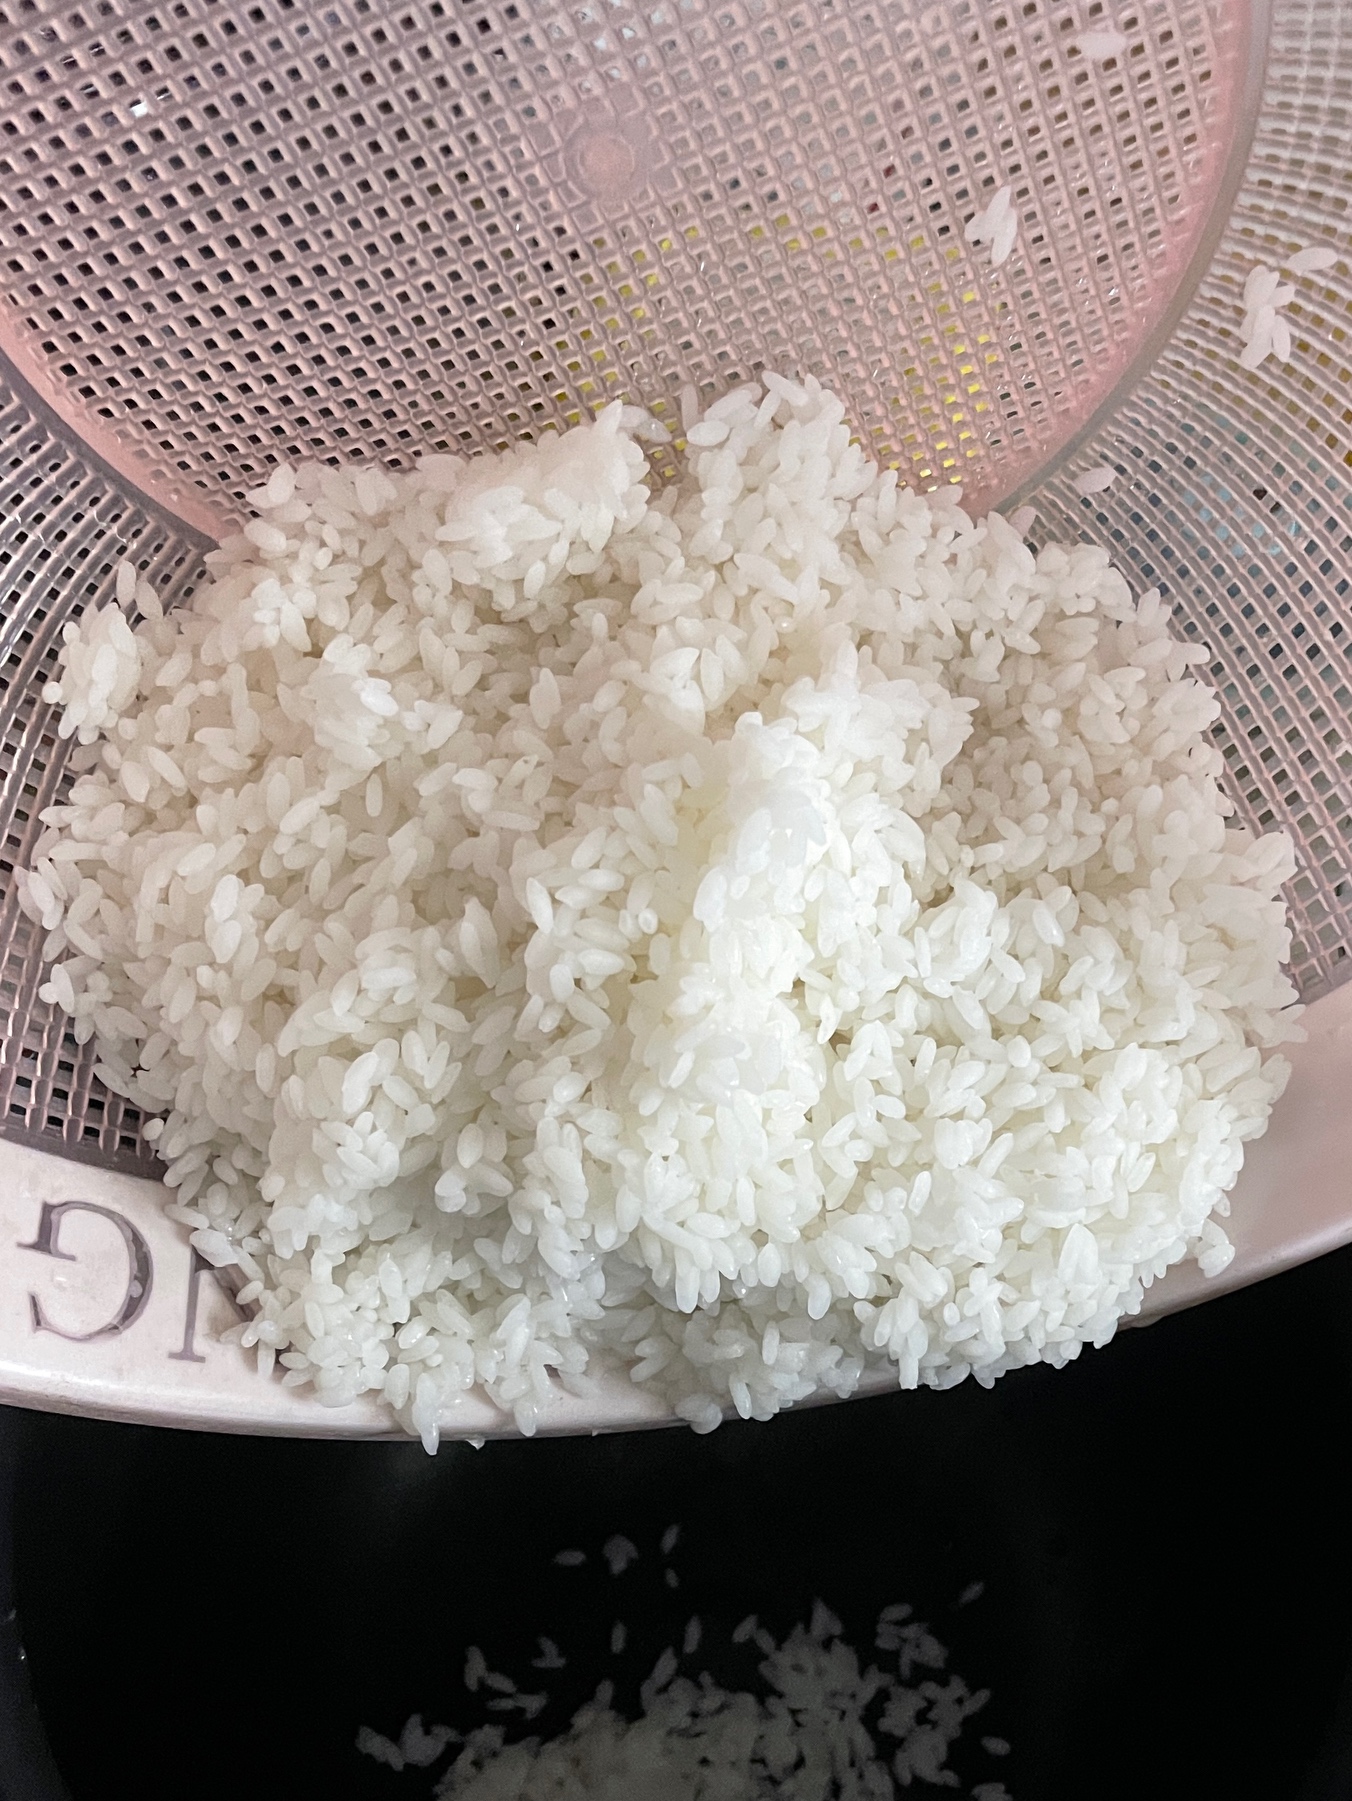 老一辈喜欢的粒粒分明的米饭的做法